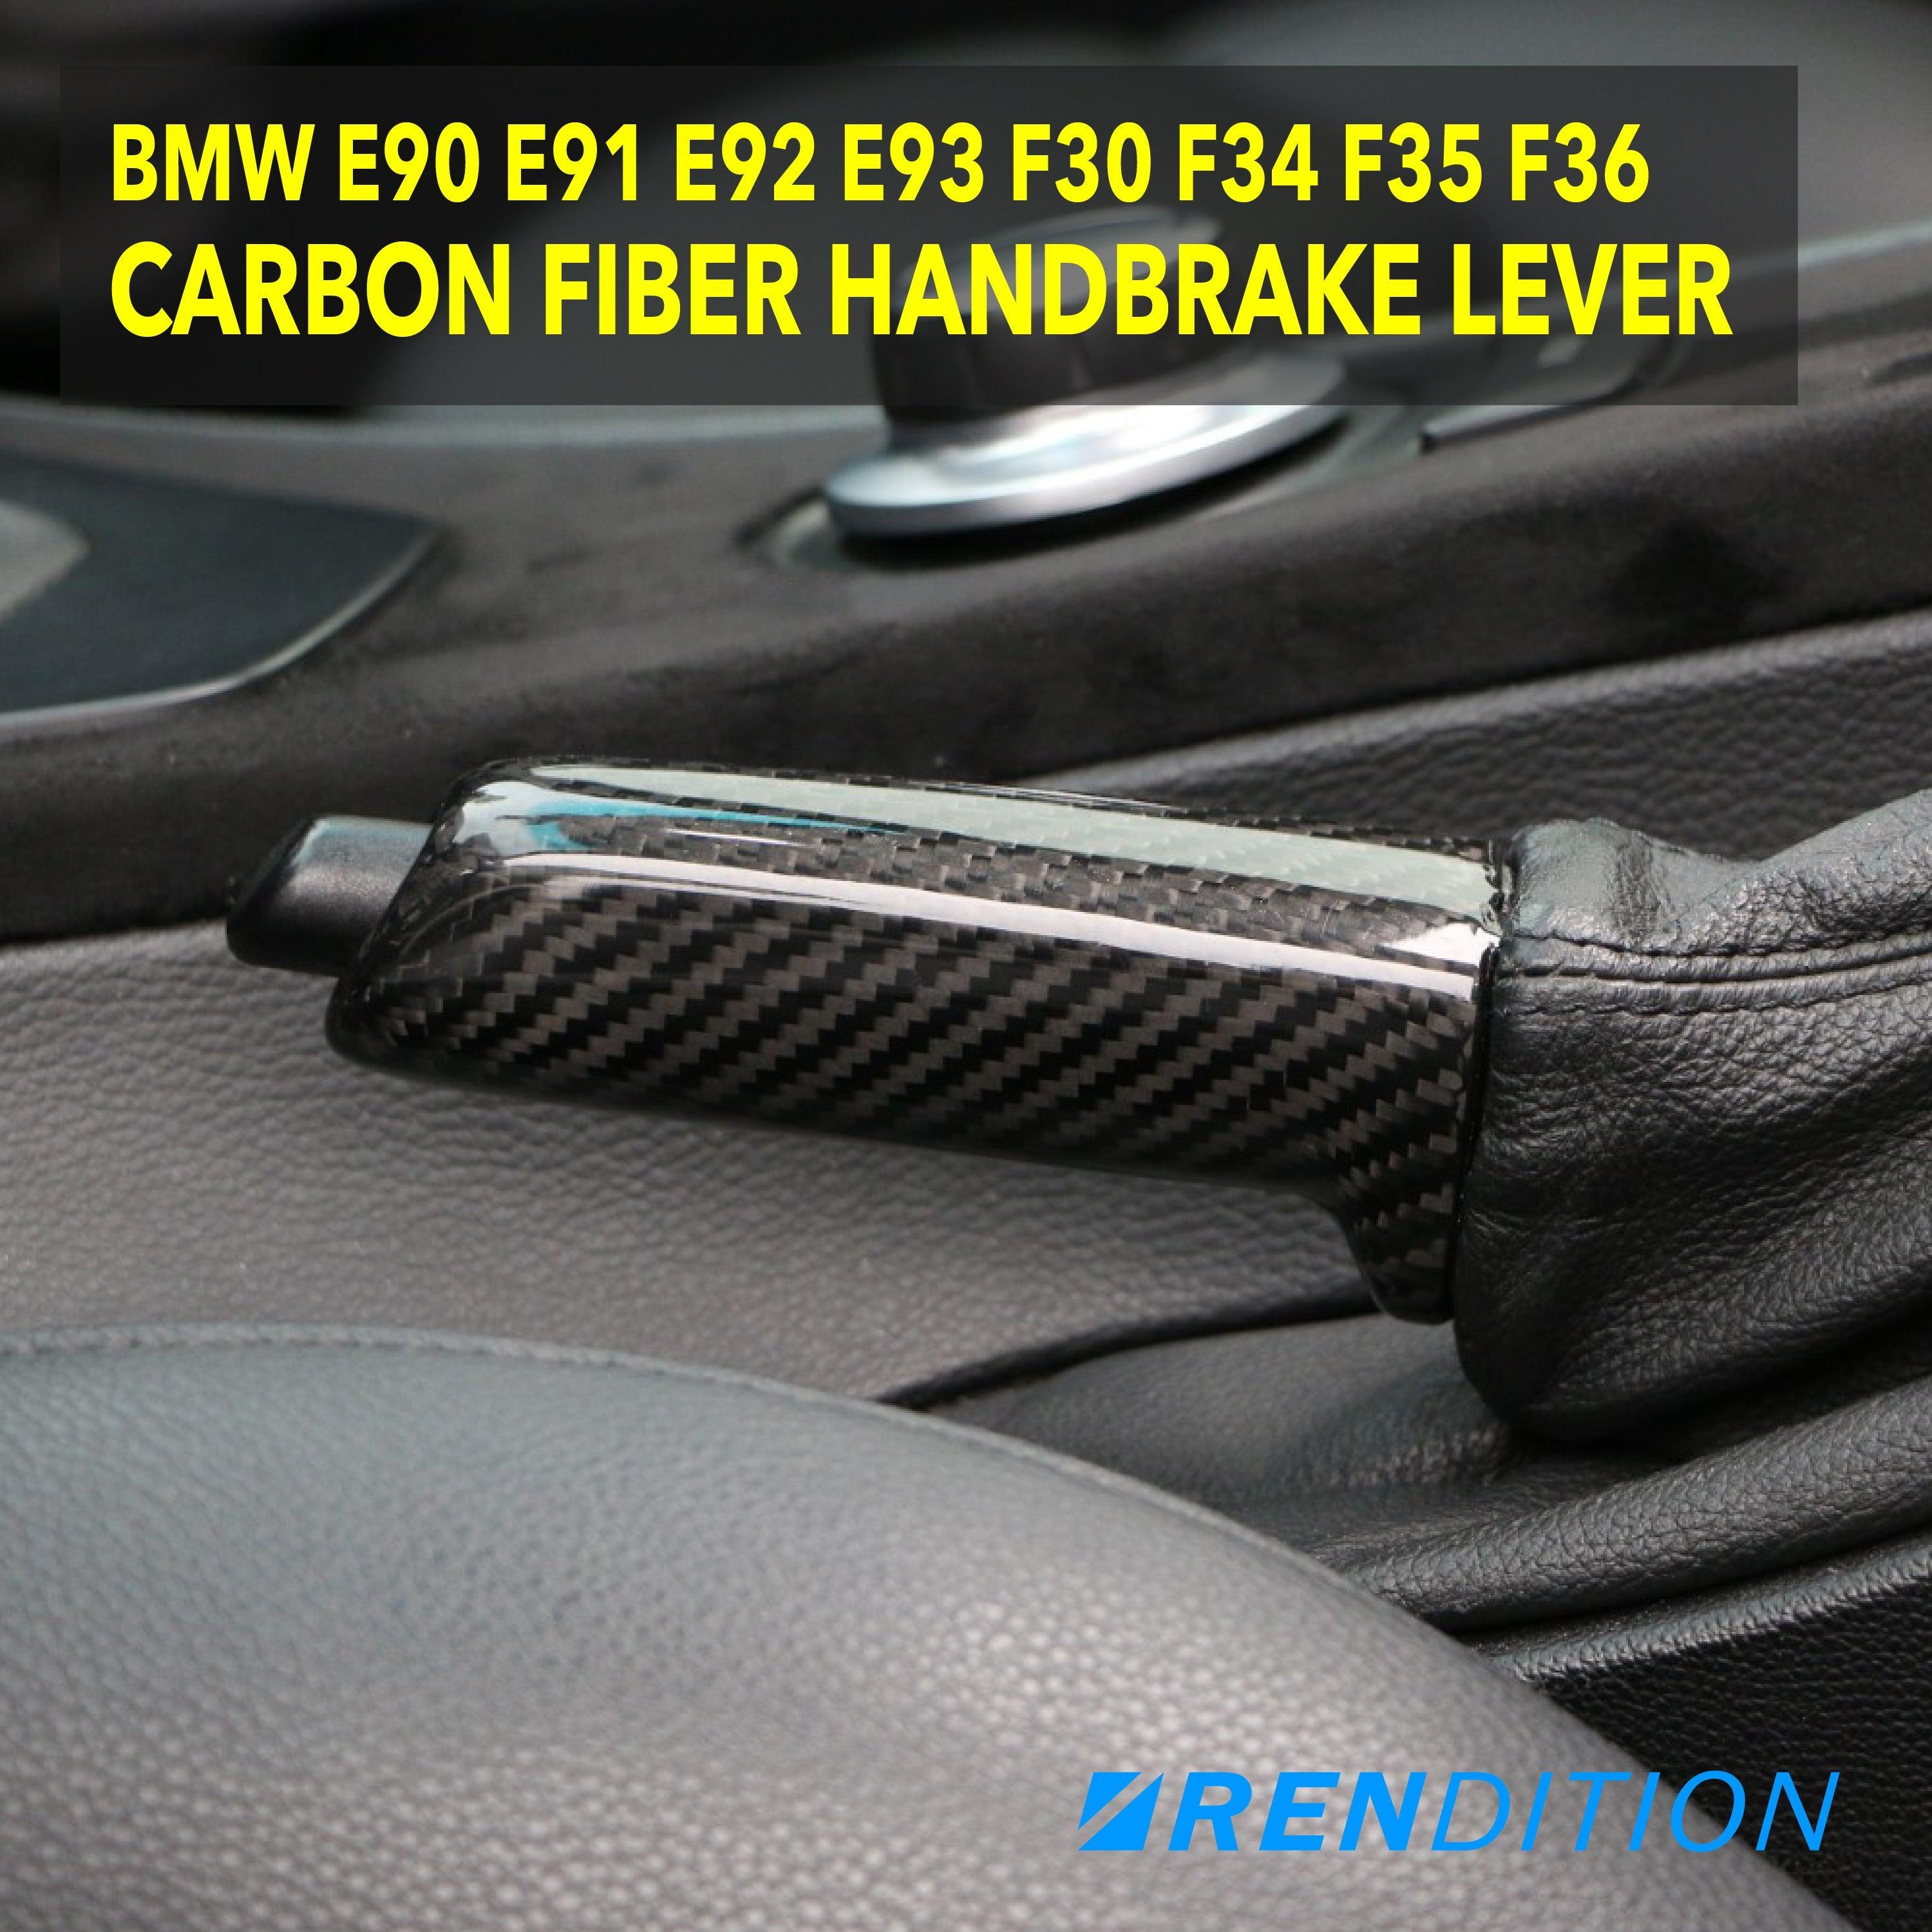 BMW CARBON FIBER HANDBRAKE LEVER E90 E91 E92 E93 F30 F34 F35 F36 - K2 Industries